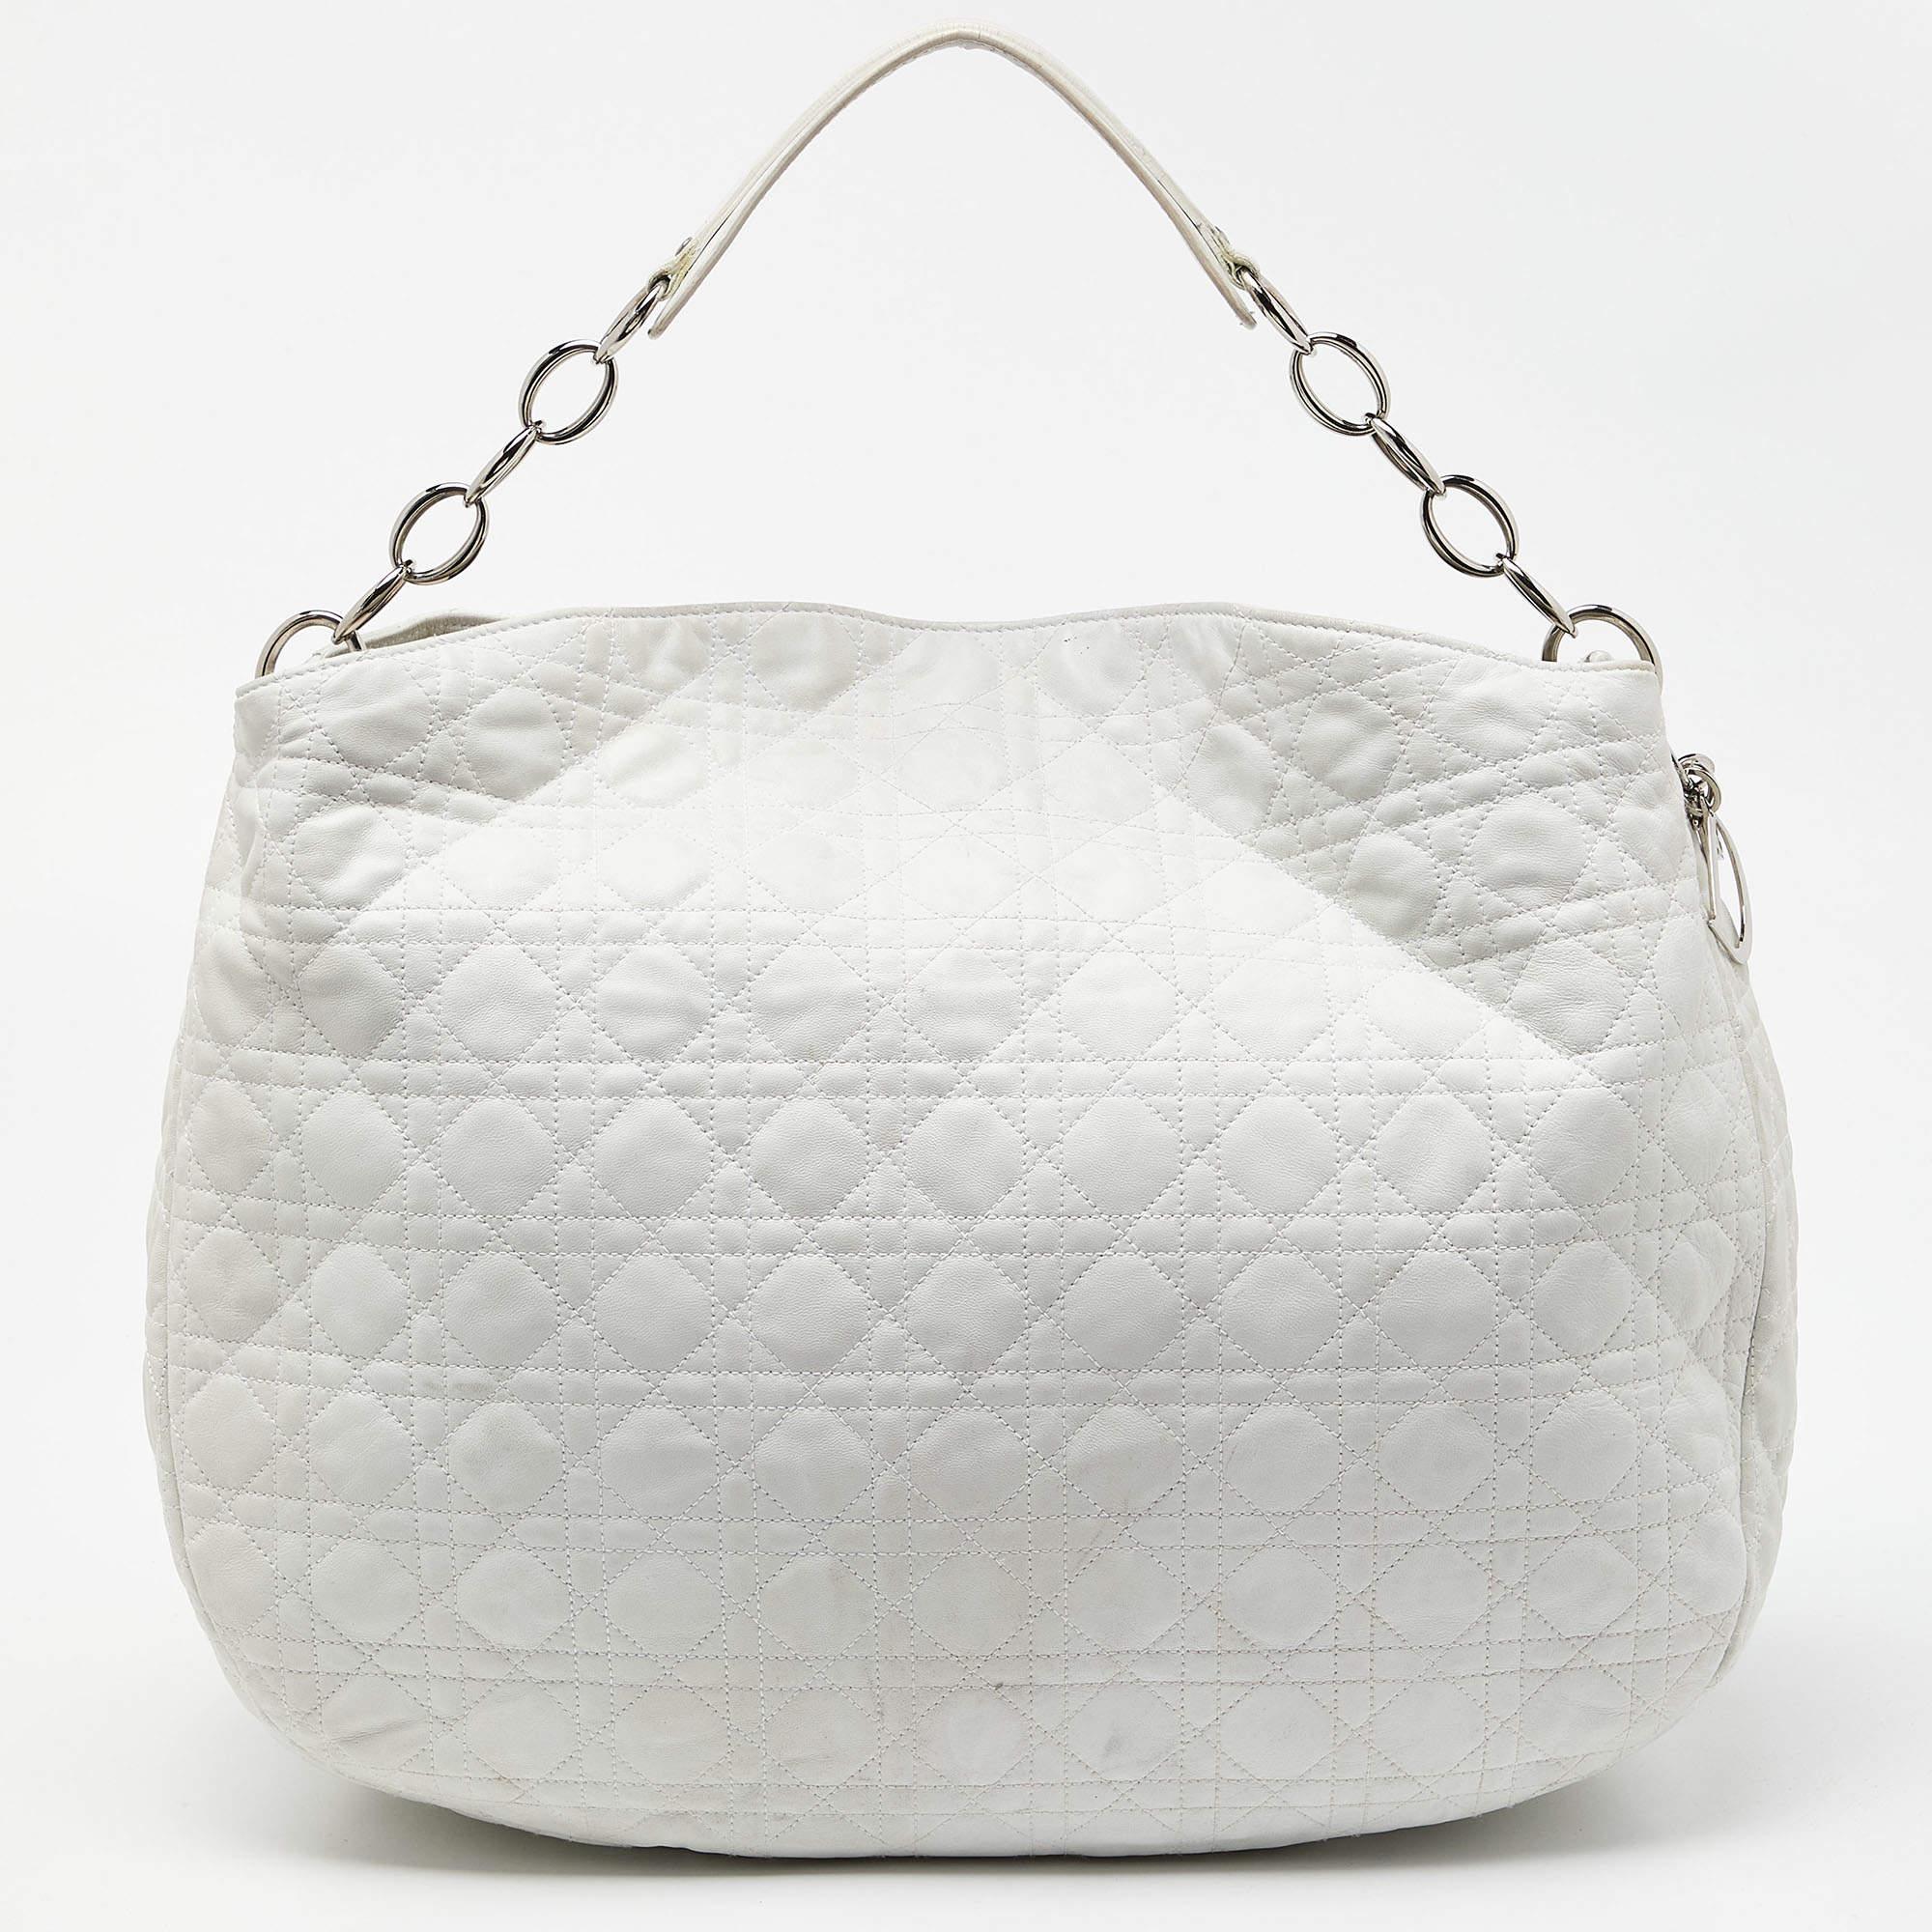 Eine Handtasche sollte nicht nur gut aussehen, sondern auch praktisch sein, so wie diese wunderschöne Hobo von Dior. Diese aus Leder gefertigte Tasche hat ein hübsches, gestepptes Äußeres aus Cannage. Sie hat eine offene Oberseite mit